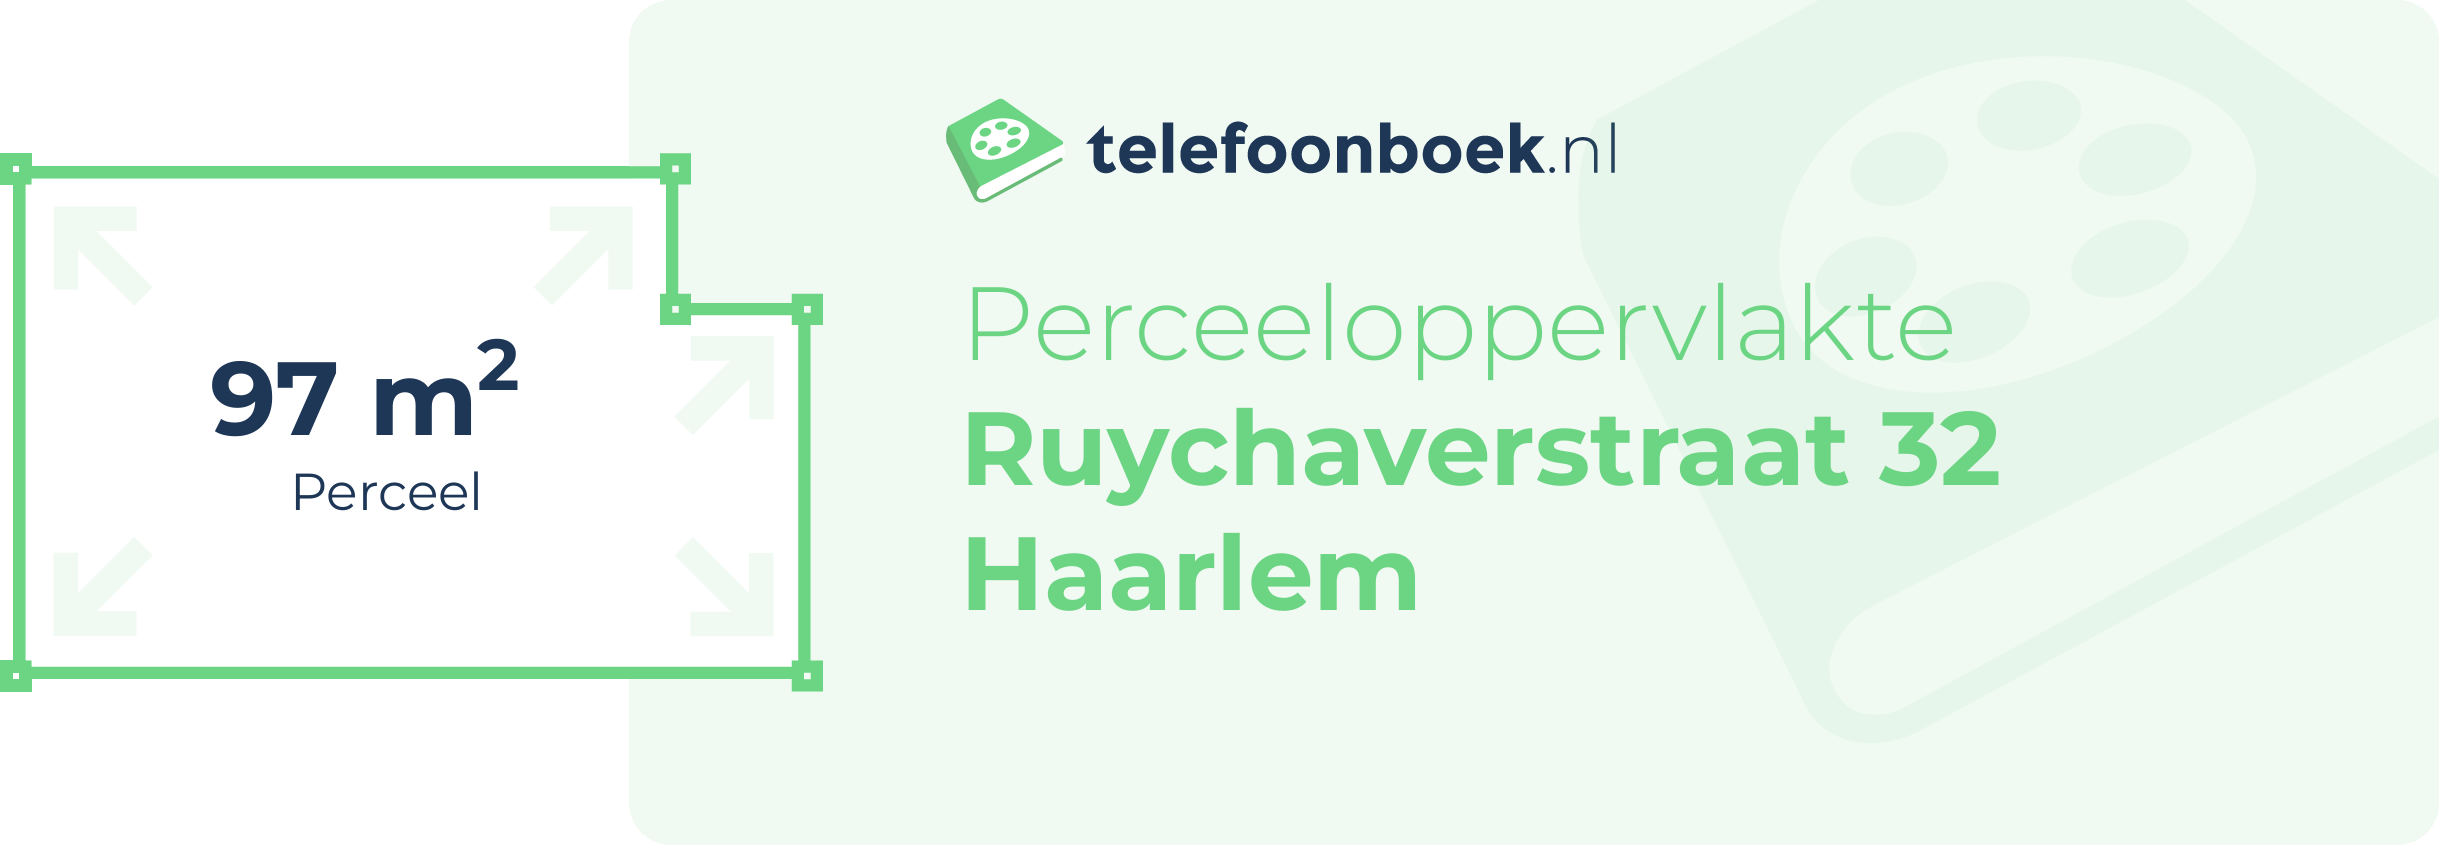 Perceeloppervlakte Ruychaverstraat 32 Haarlem